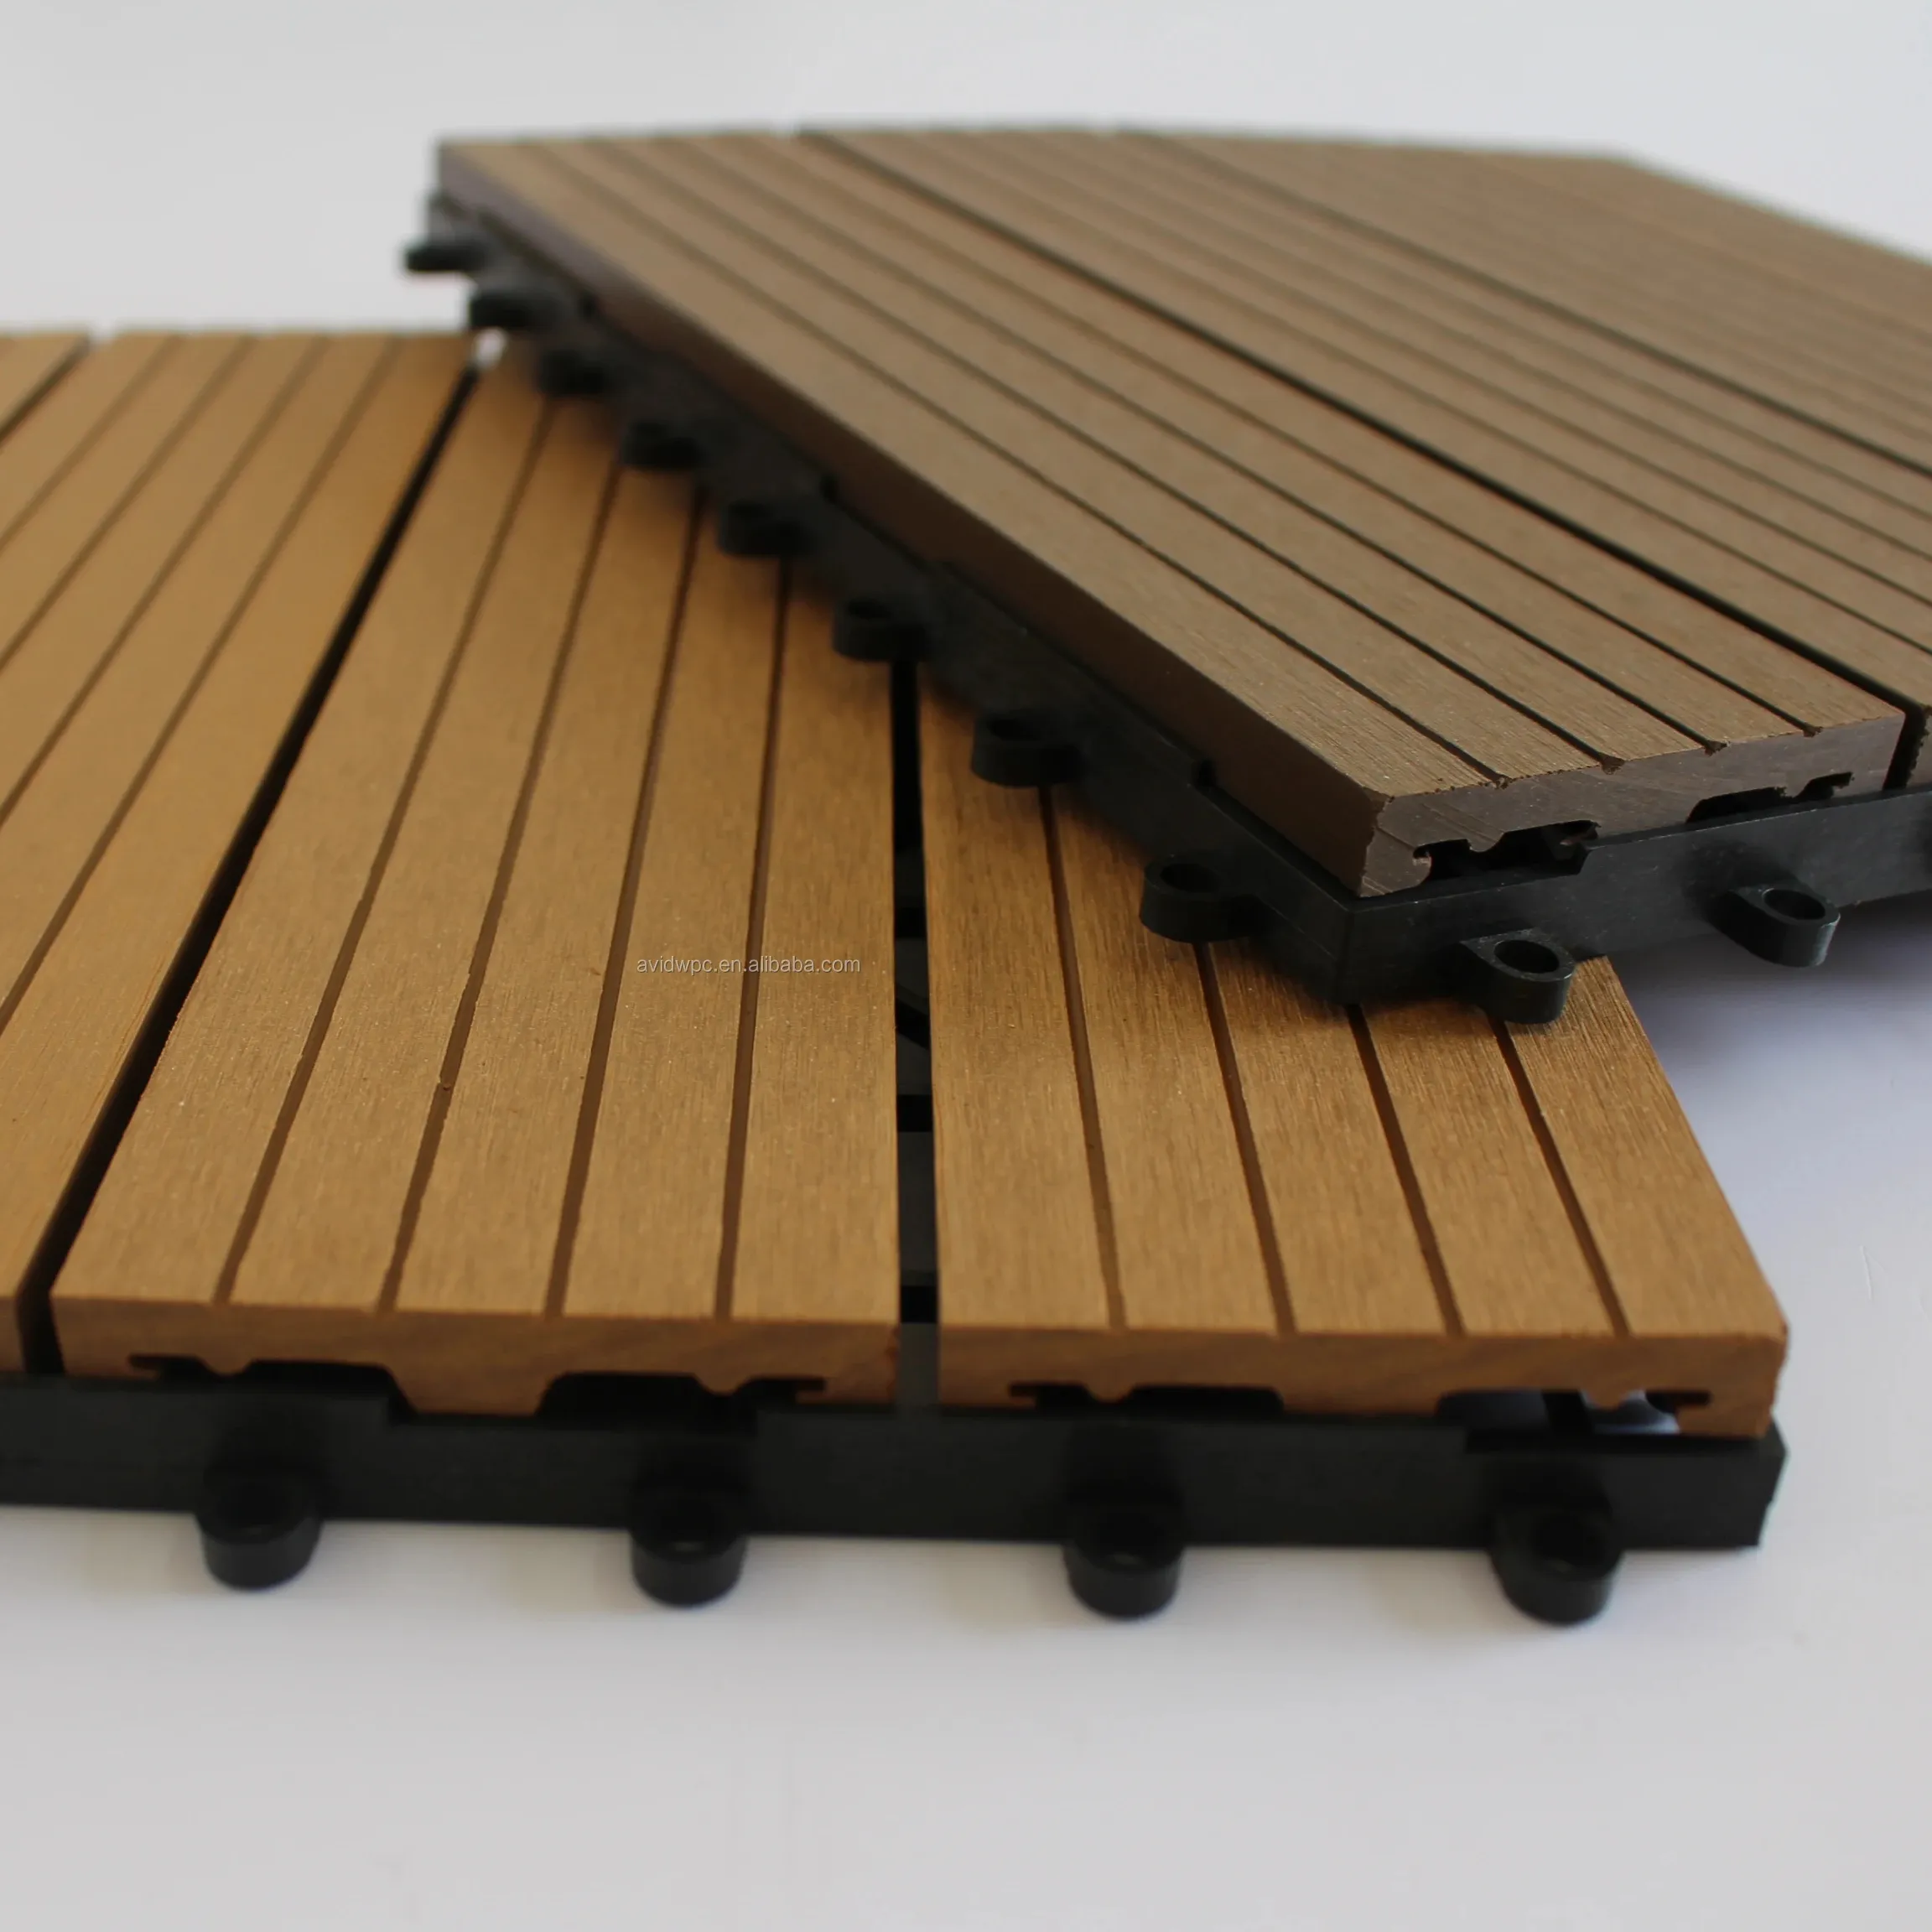 Nuovo materiale da costruzione facile da installare anti-uv impermeabile pavimento di piastrelle per esterni per decking all'aperto